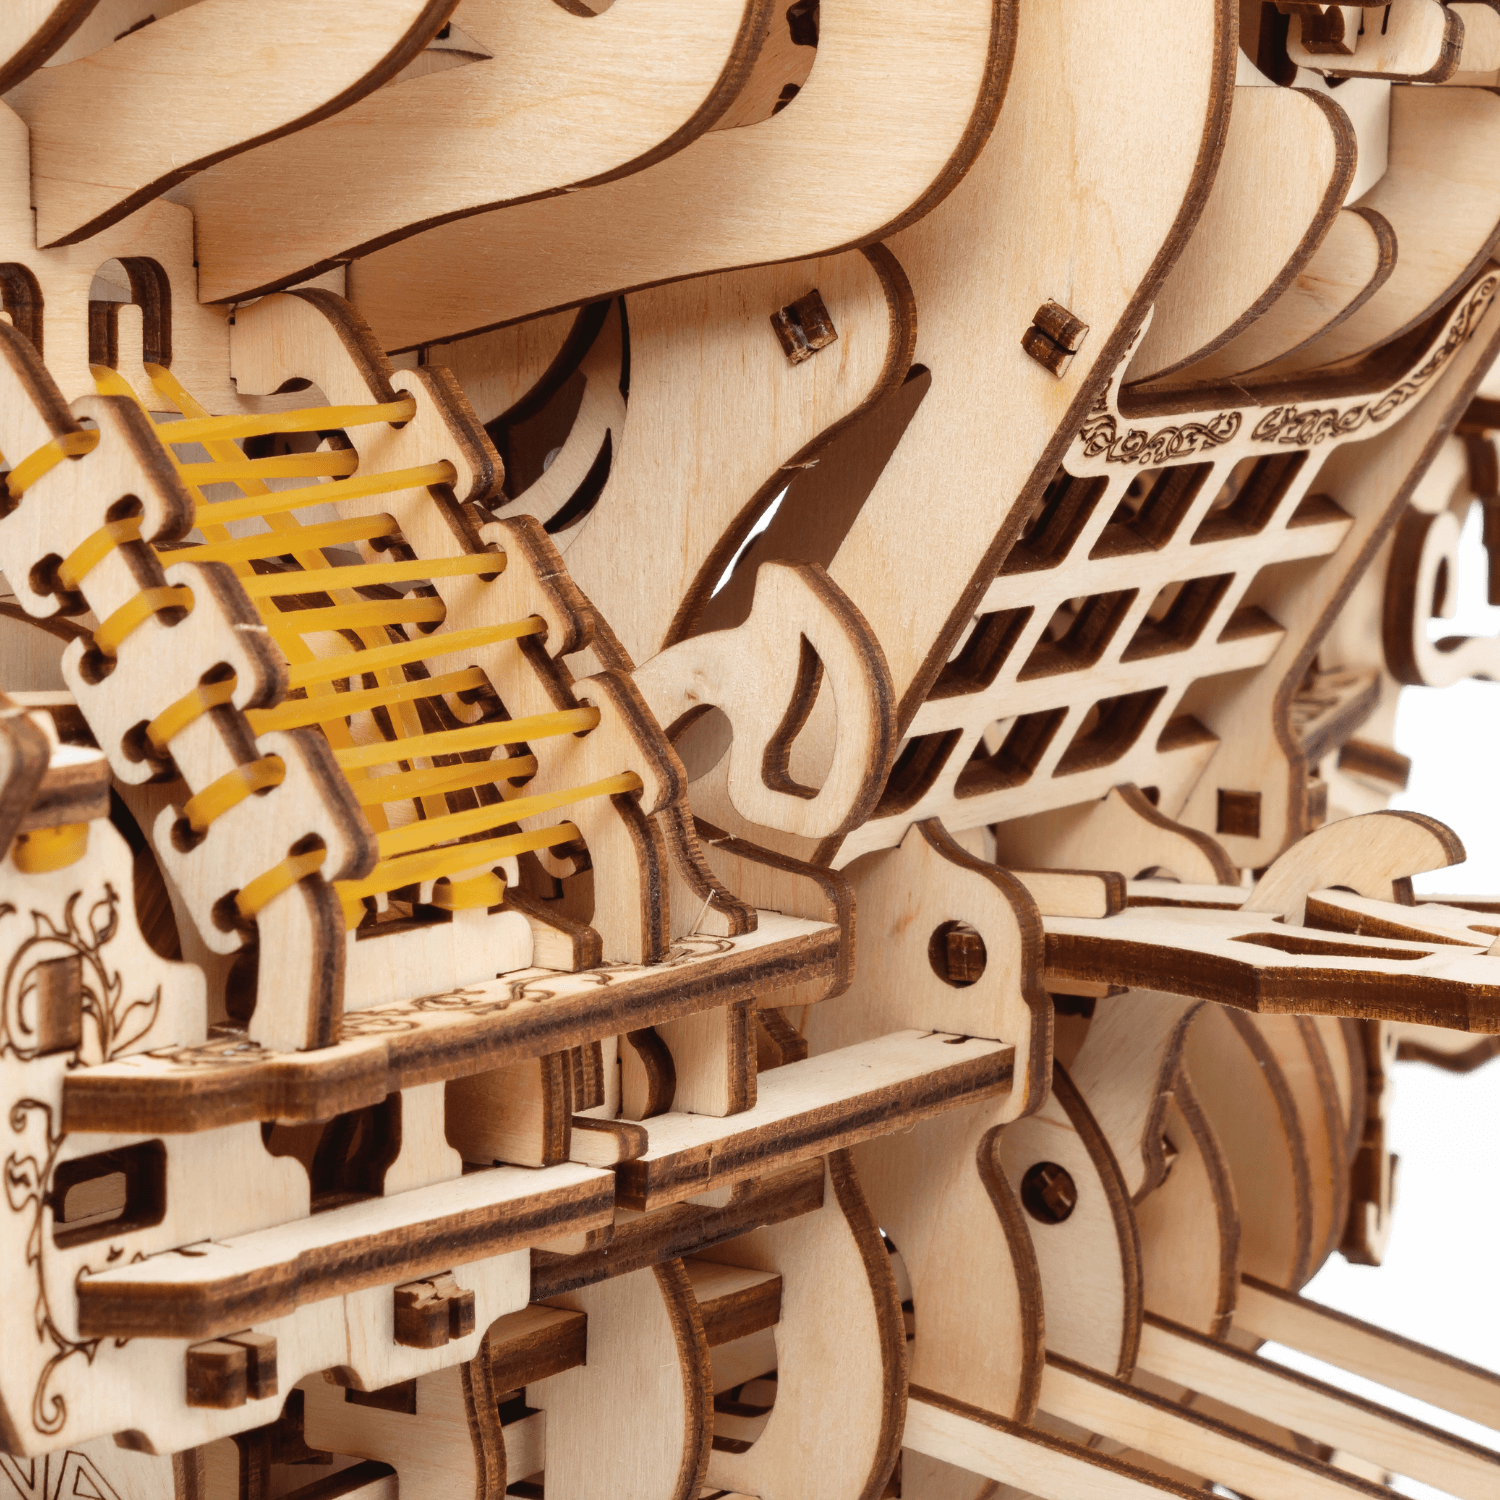 Mechanisch luchtschip | Skylord-Mechanische houten puzzel-Eco-Hout-Kunst...